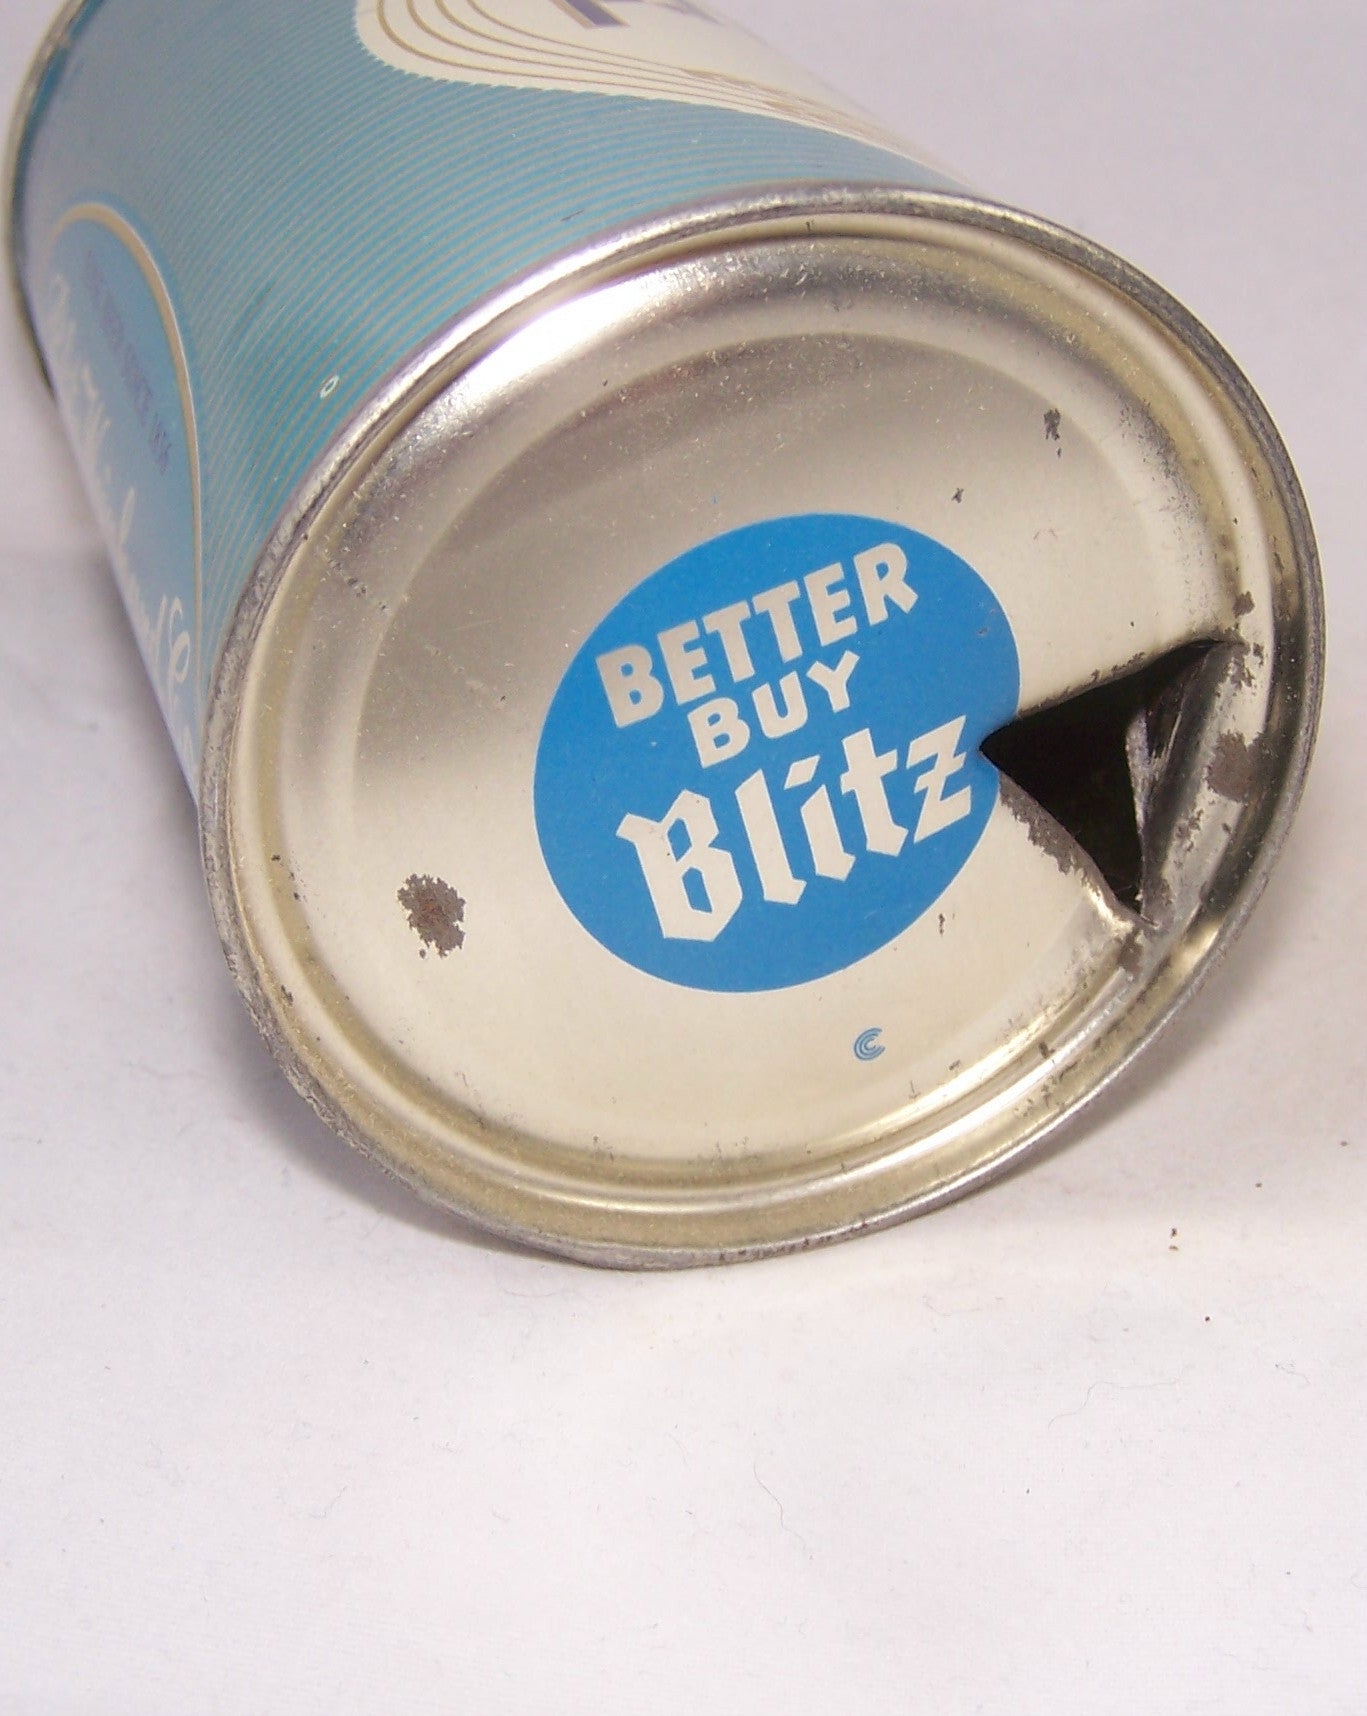 Blitz Weinhard Beer, USBC 39-29, Grade A1+ Sold on 09/04/17